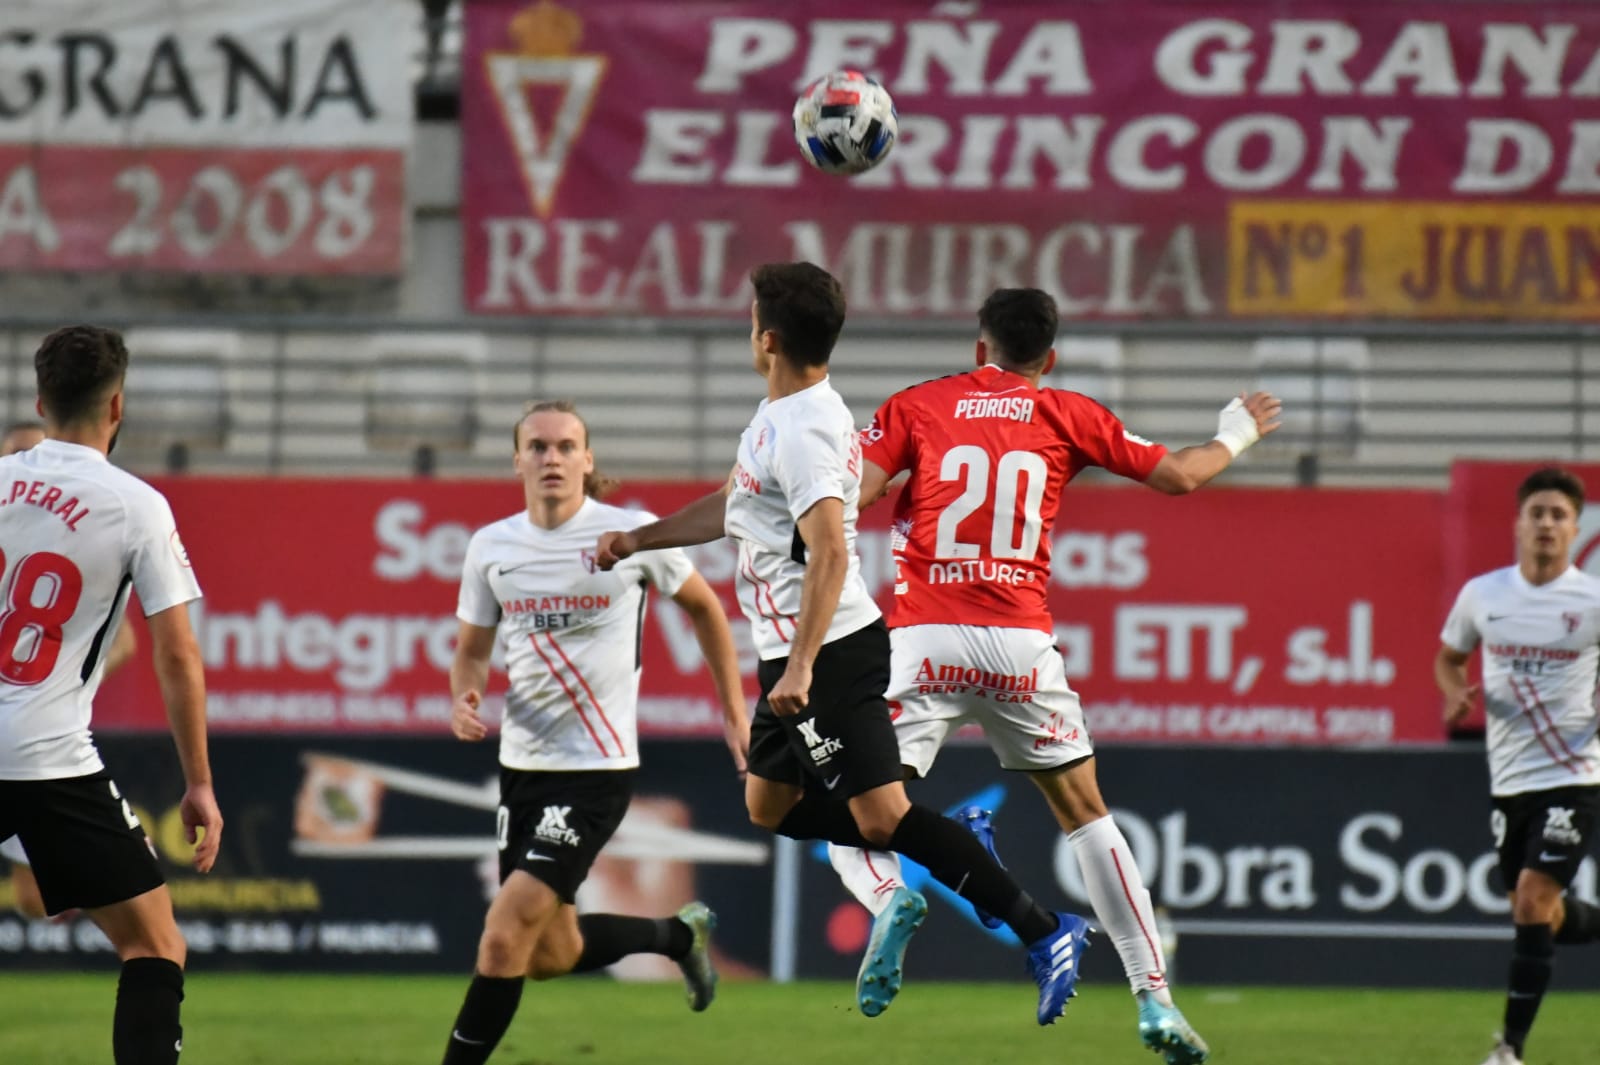 Imagen del Sevilla Atlético frente al Real Murcia 